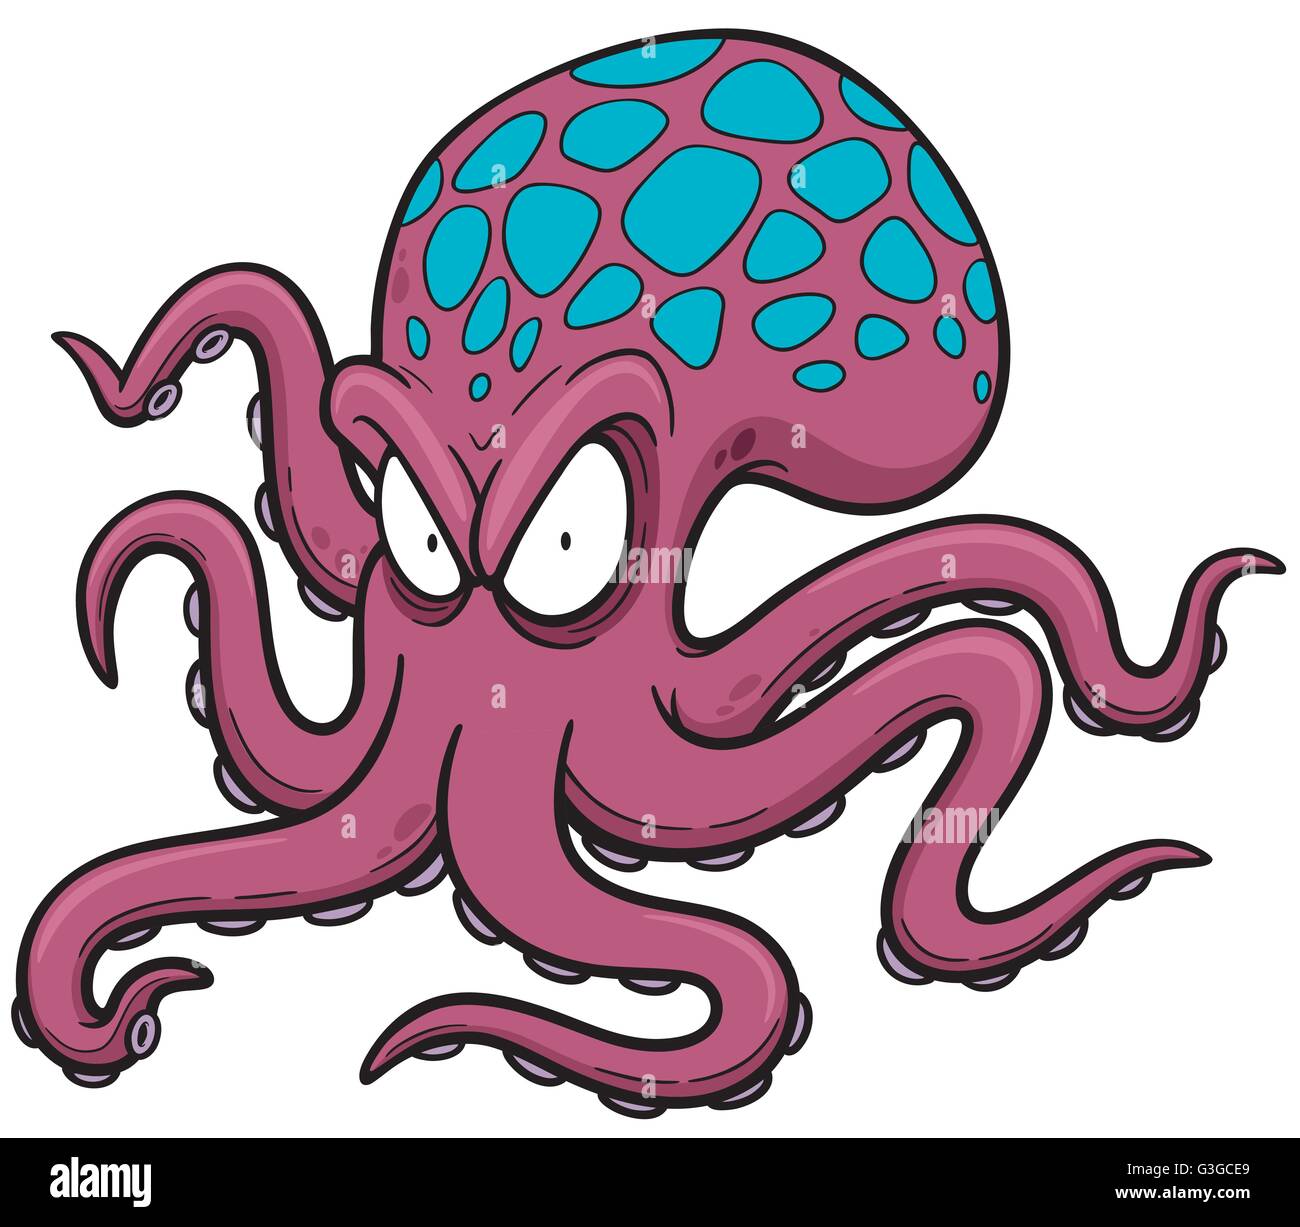 Vektor-Illustration von Cartoon octopus Stock Vektor